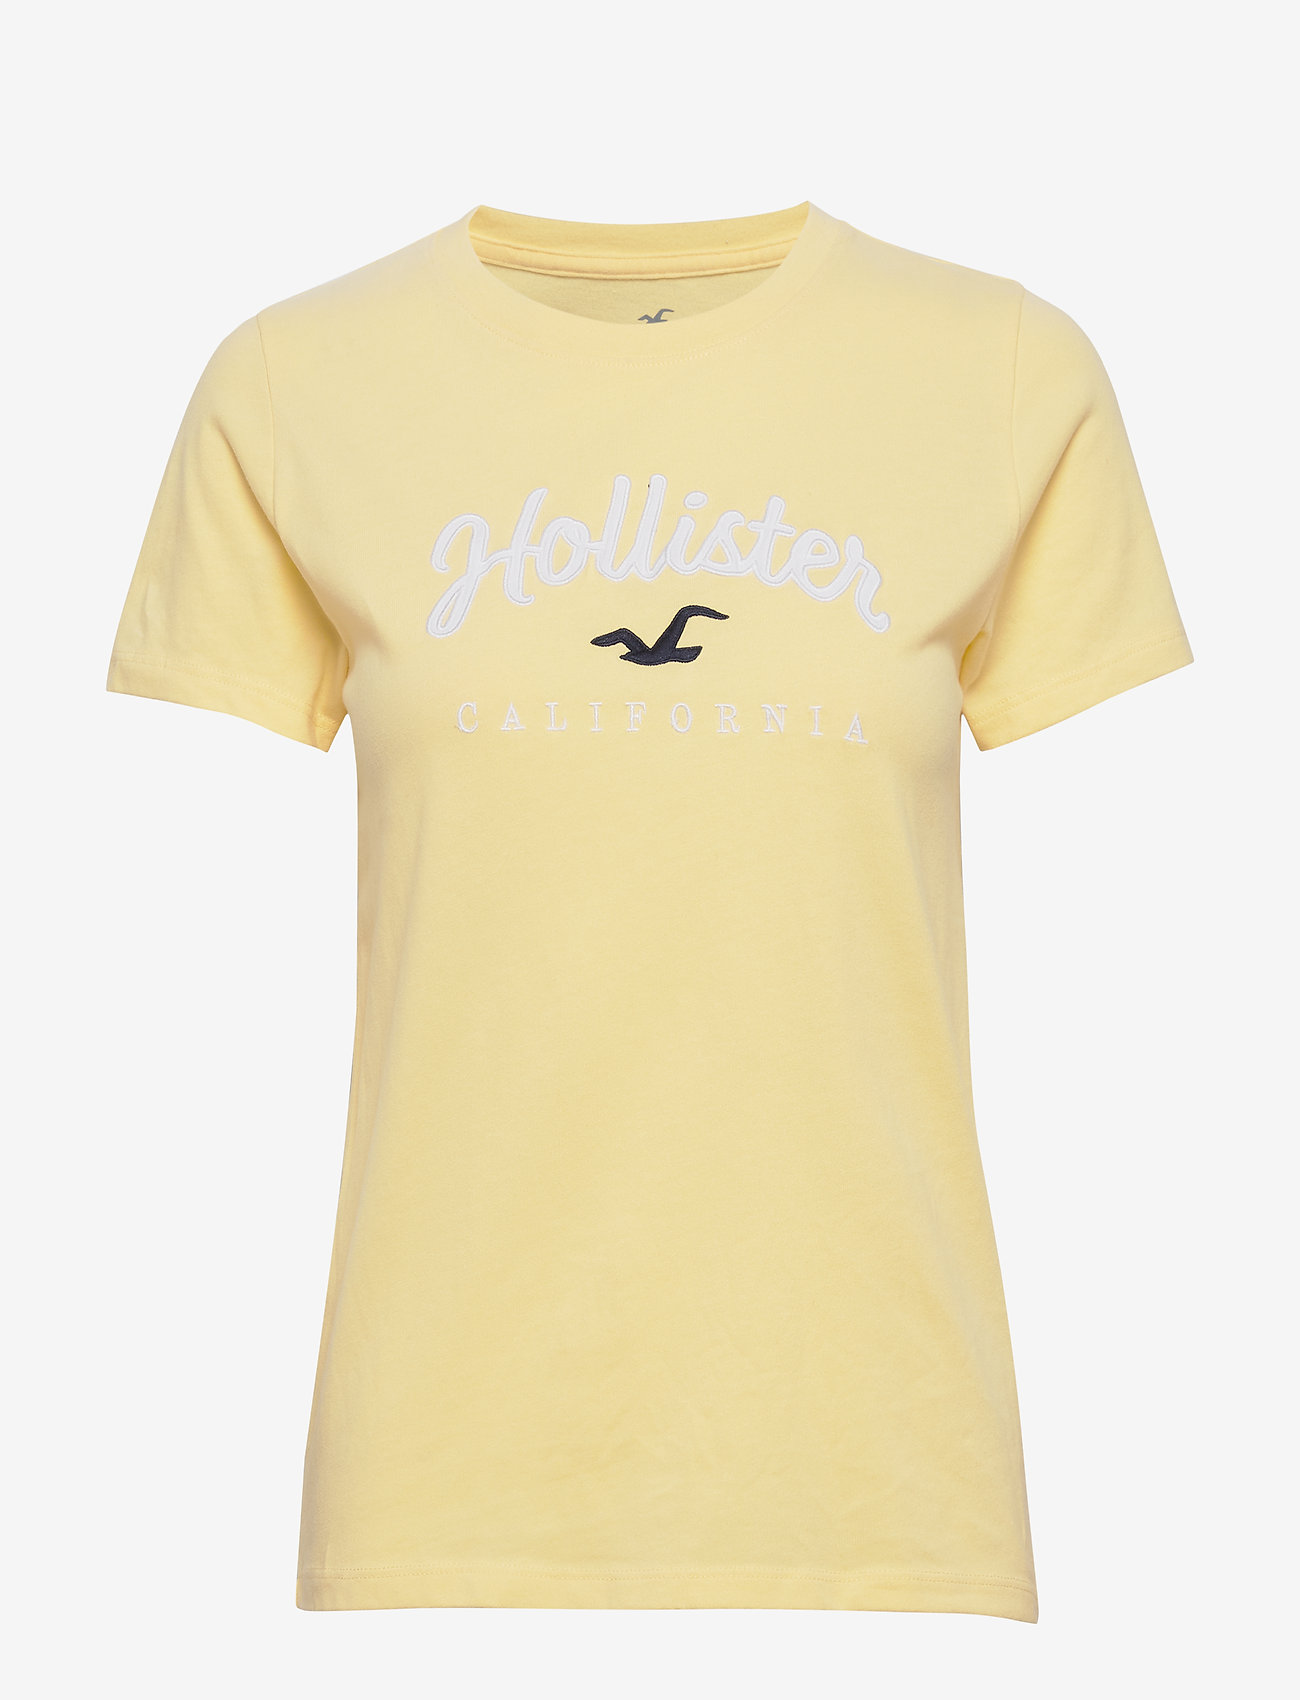 hollister yellow t shirt